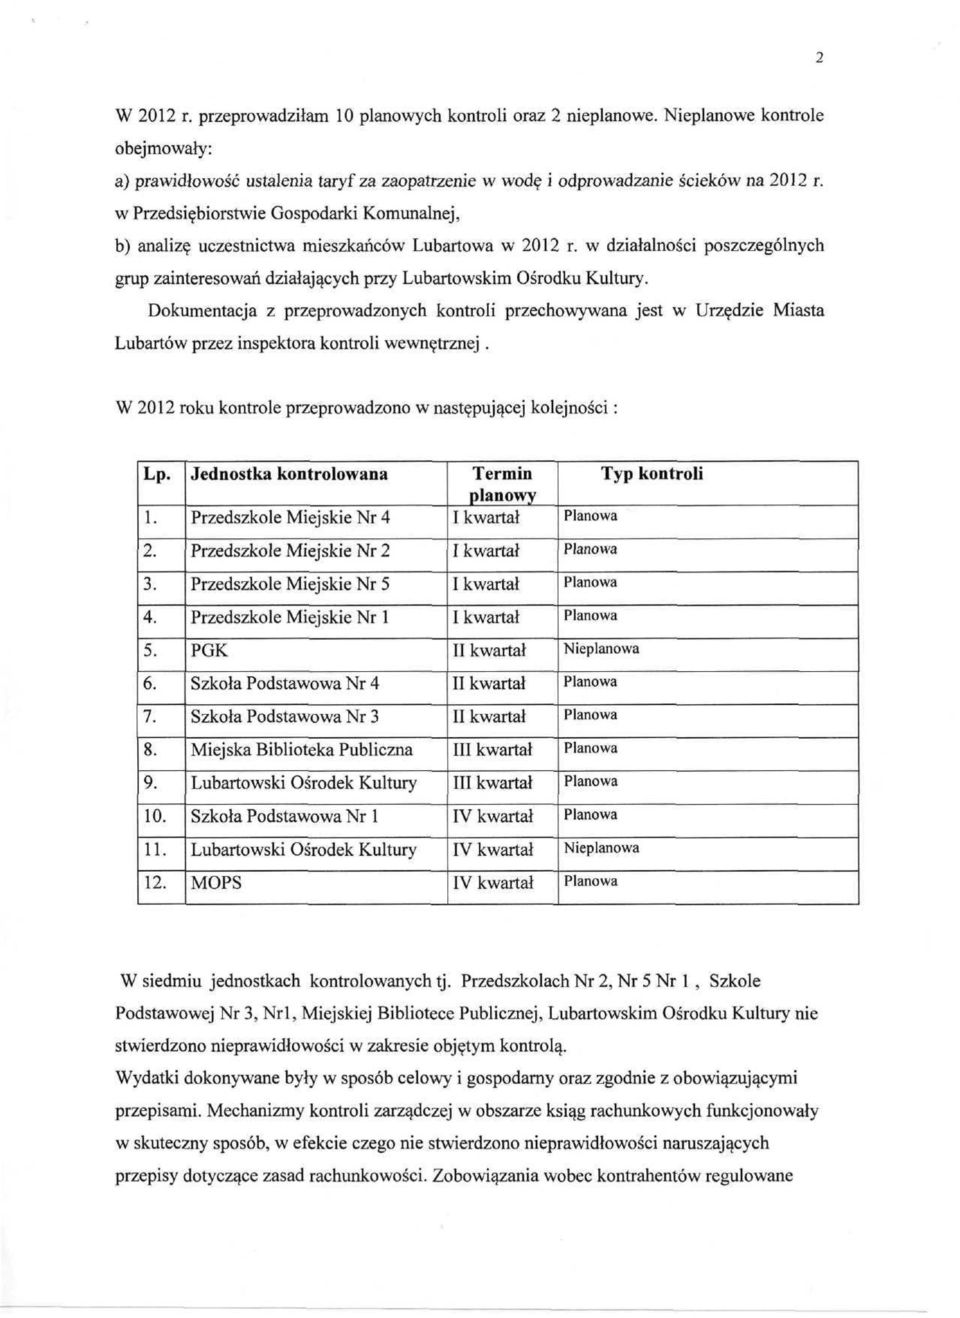 Dokumentacja z przeprowadzonych kontroli przechowywana jest w Urzędzie Miasta Lubartów przez inspektora kontroli wewnętrznej. W 2012 roku kontrole przeprowadzono w następującej kolejności: Lp. 1.